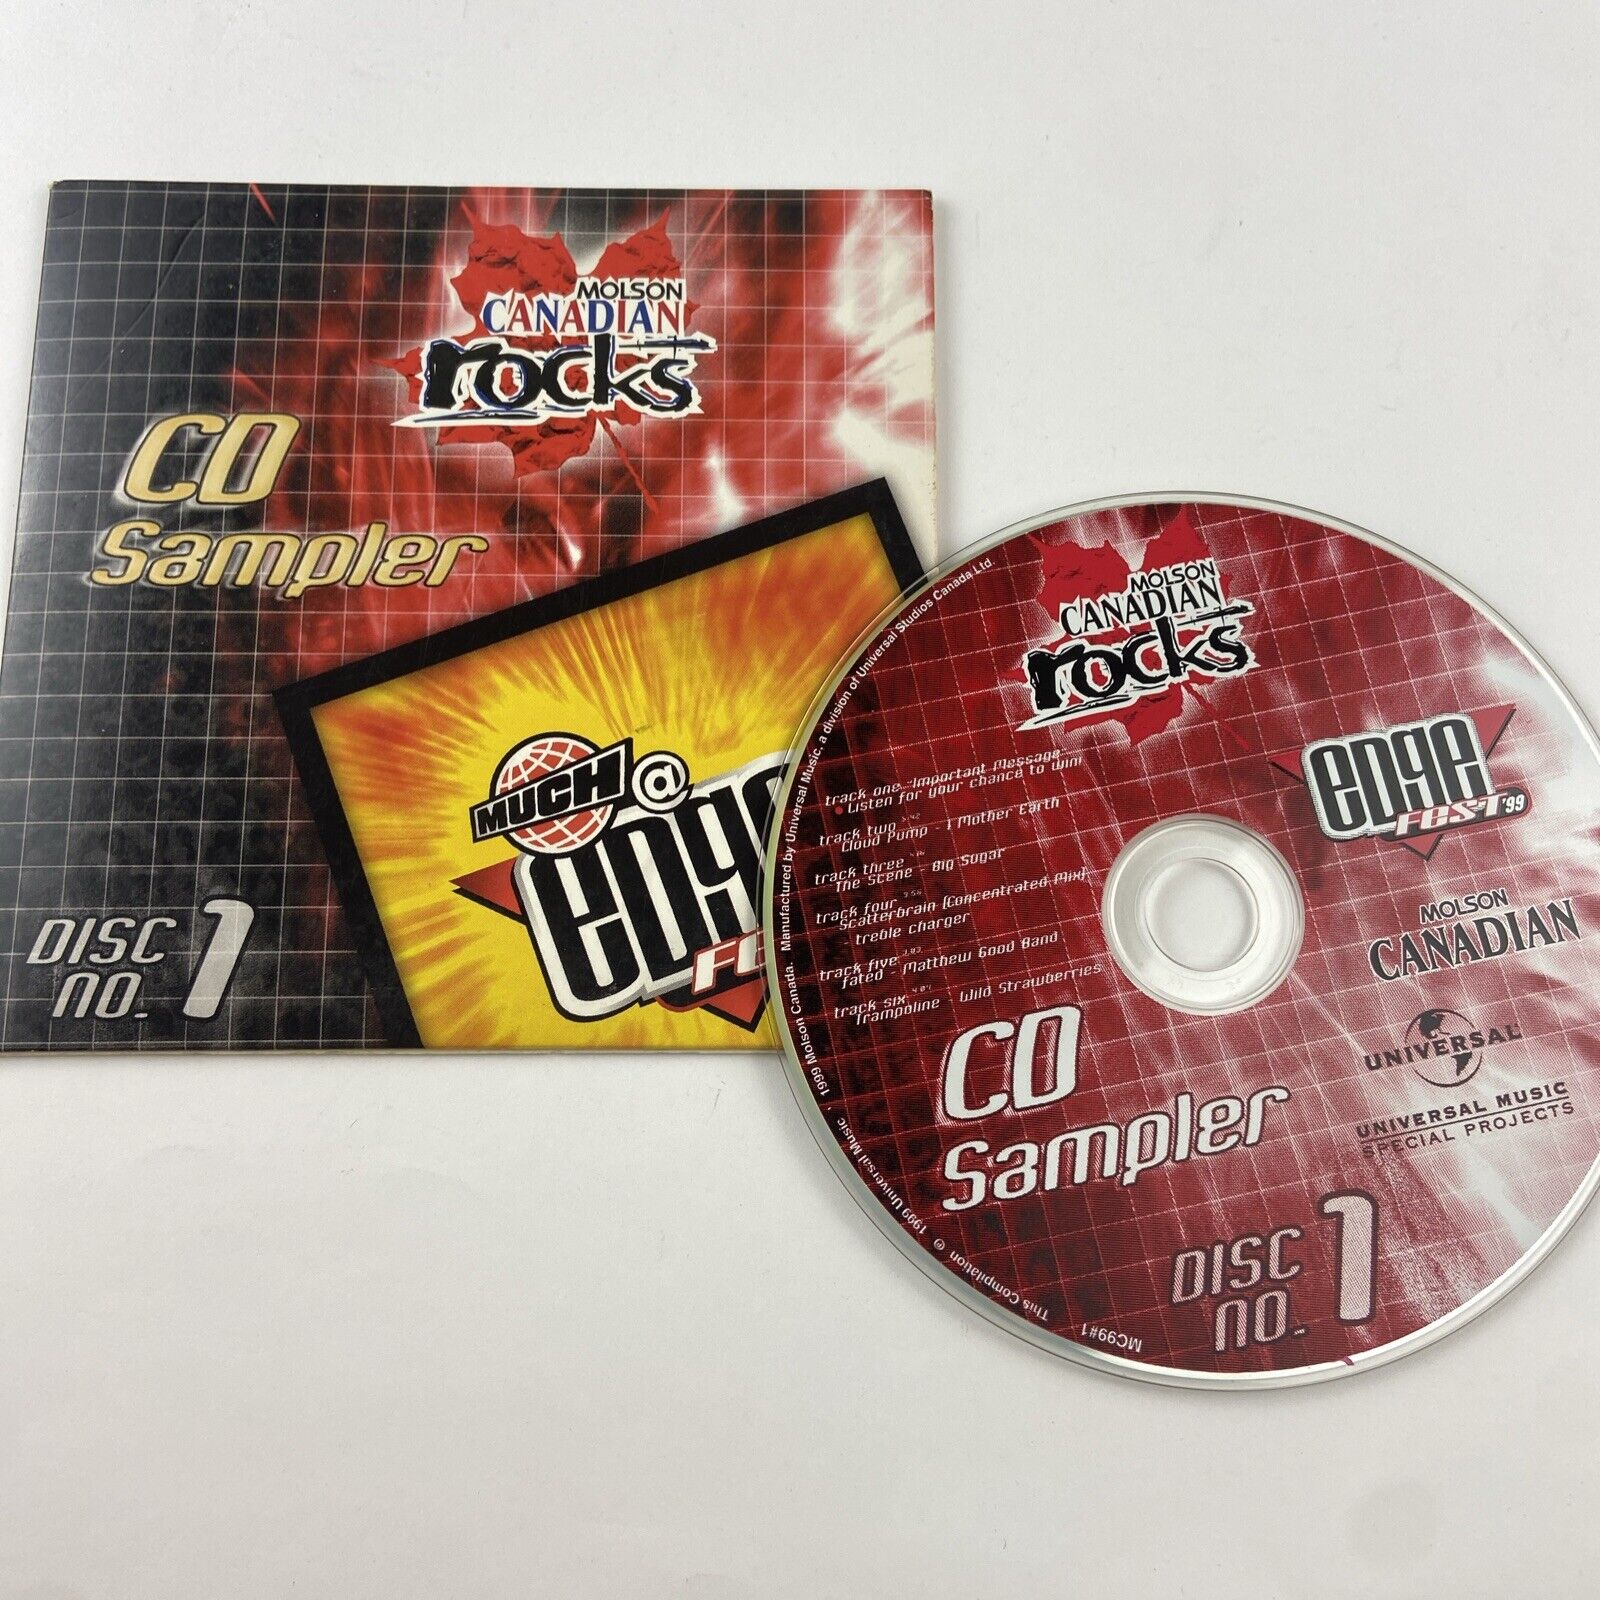 Molson Canadian Rocks - Edge Fest 99 - CD Sampler - Disc 1